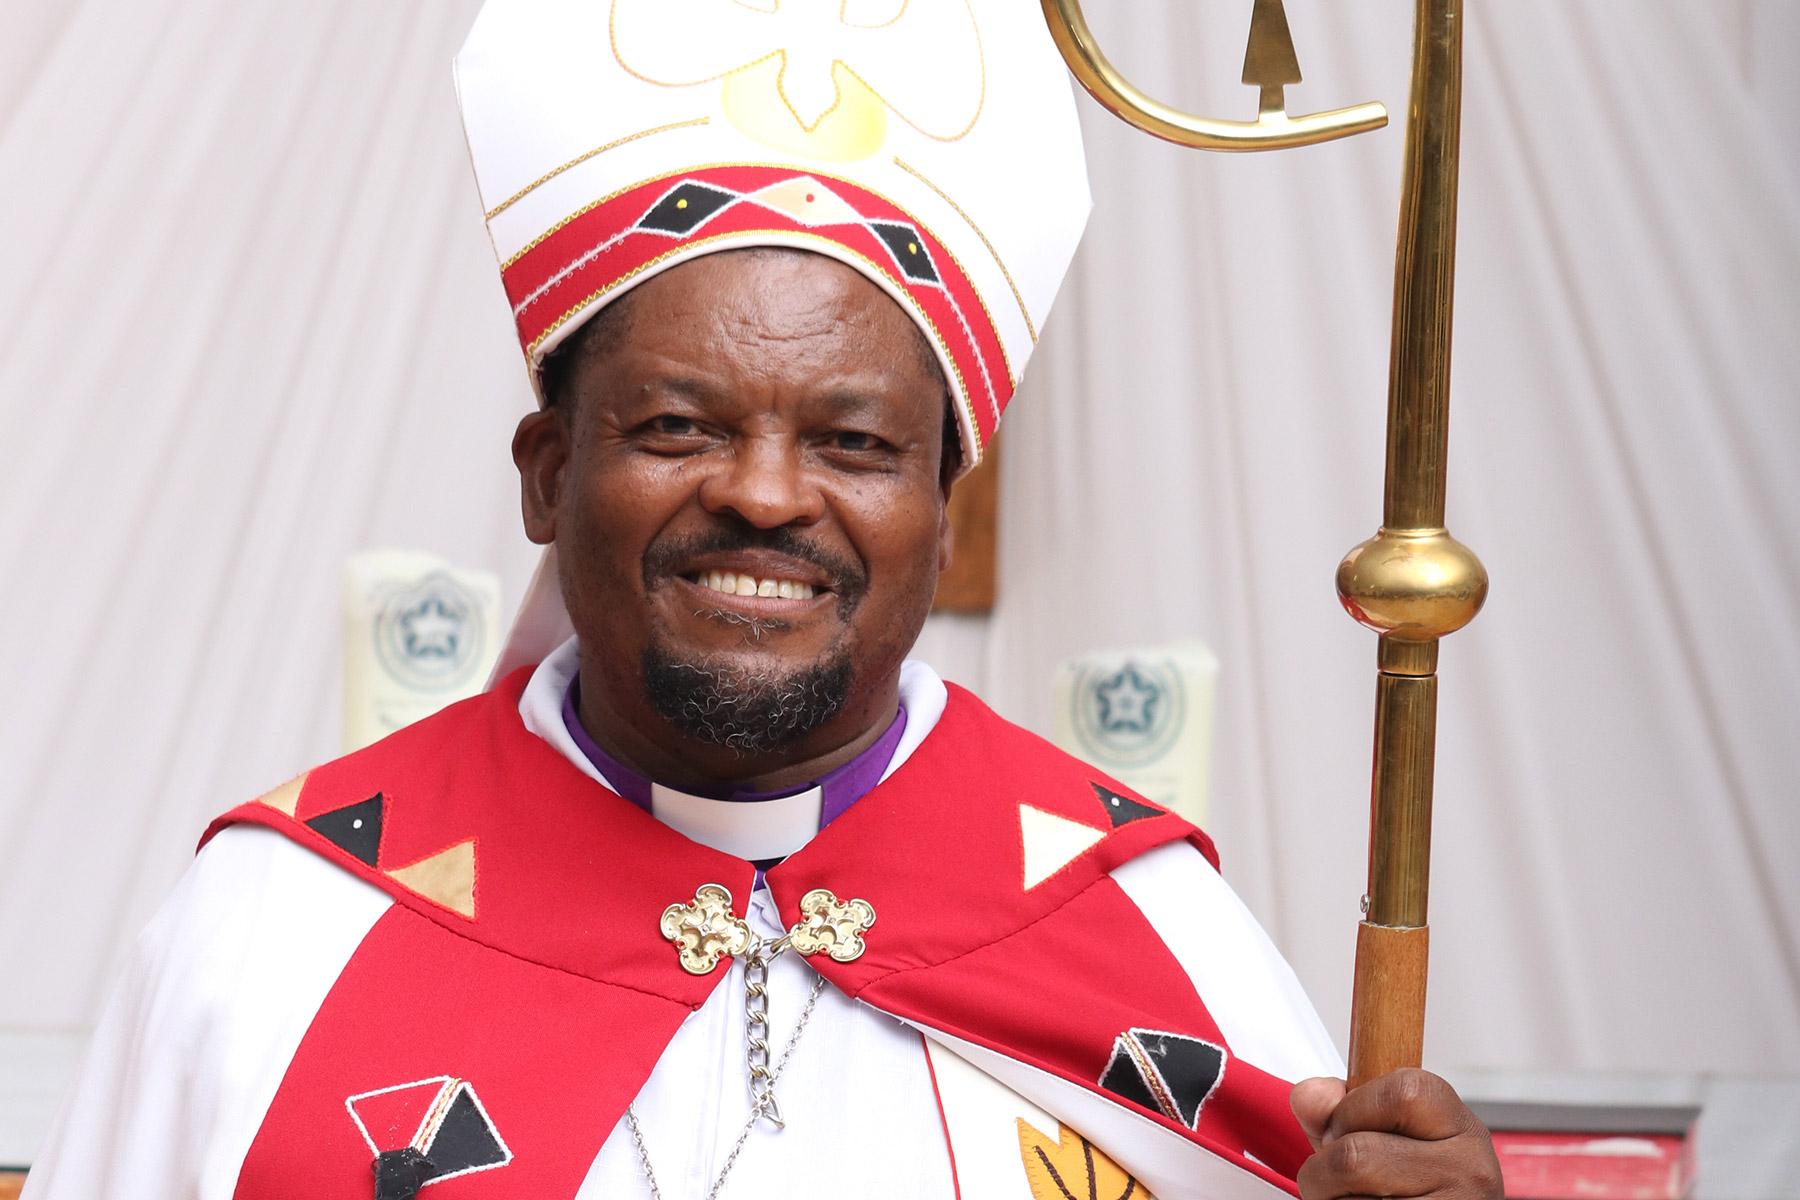 Der Leitende Bischof M. J. H. Ubane ist am 28. Januar unerwartet verstorben. Foto: ELKSA